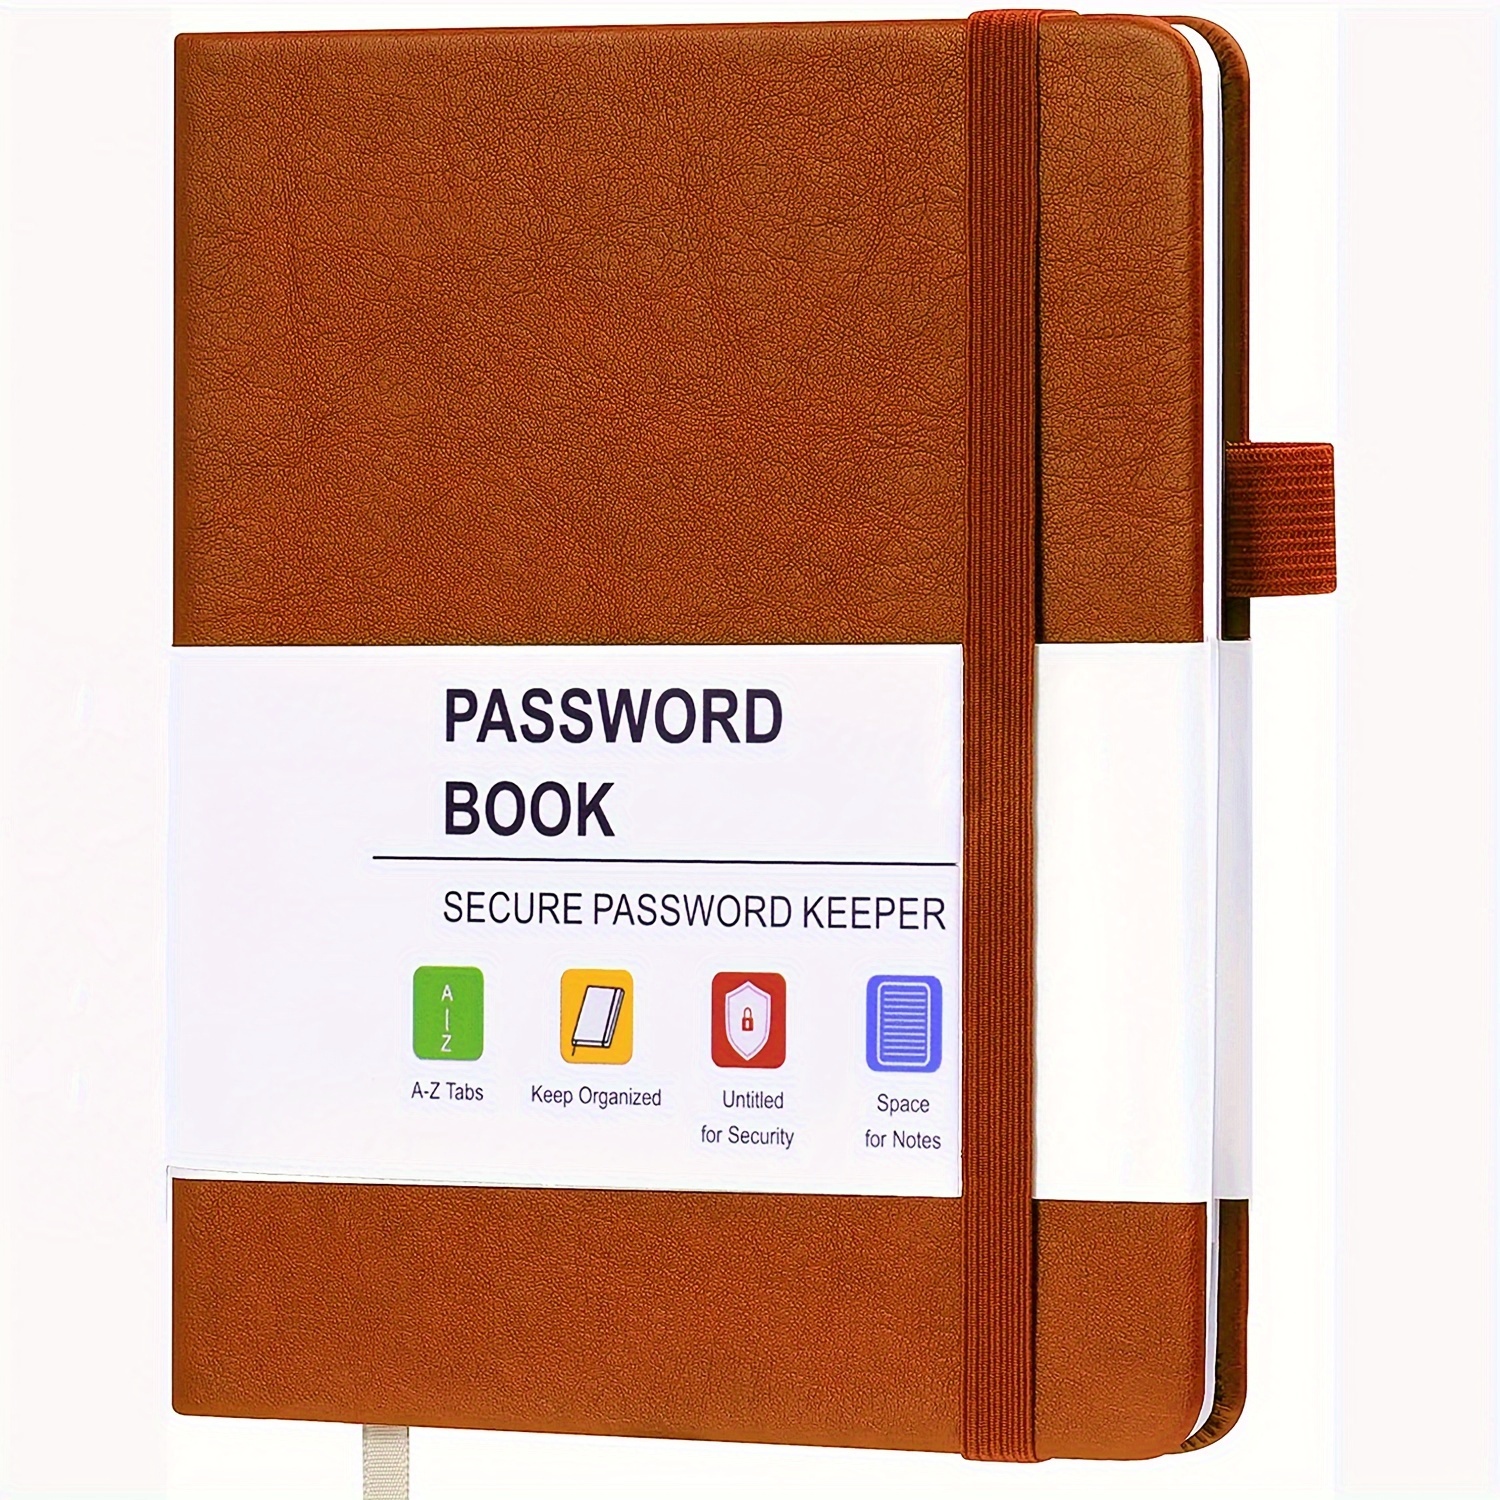 per non dimenticare: quaderno delle password | Libro alfabetico delle  password | libretto alfabetico delle password in formato ridotto.